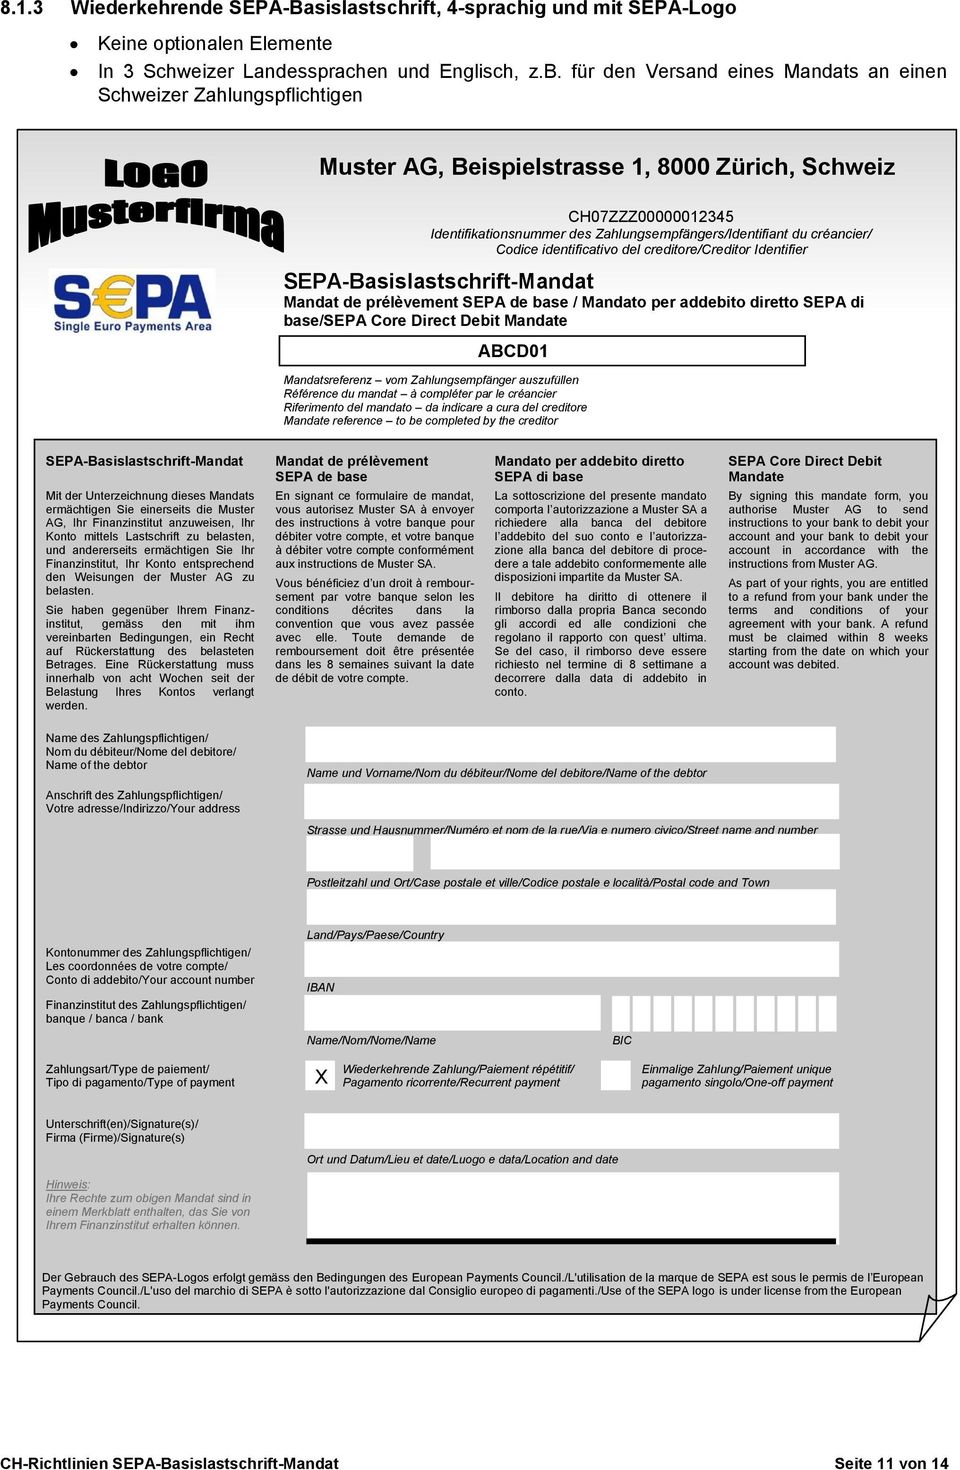 créancier/ Codice identificativo del creditore/creditor Identifier SEPA-Basislastschrift-Mandat Mandat de prélèvement SEPA de base / Mandato per addebito diretto SEPA di base/sepa Core Direct Debit